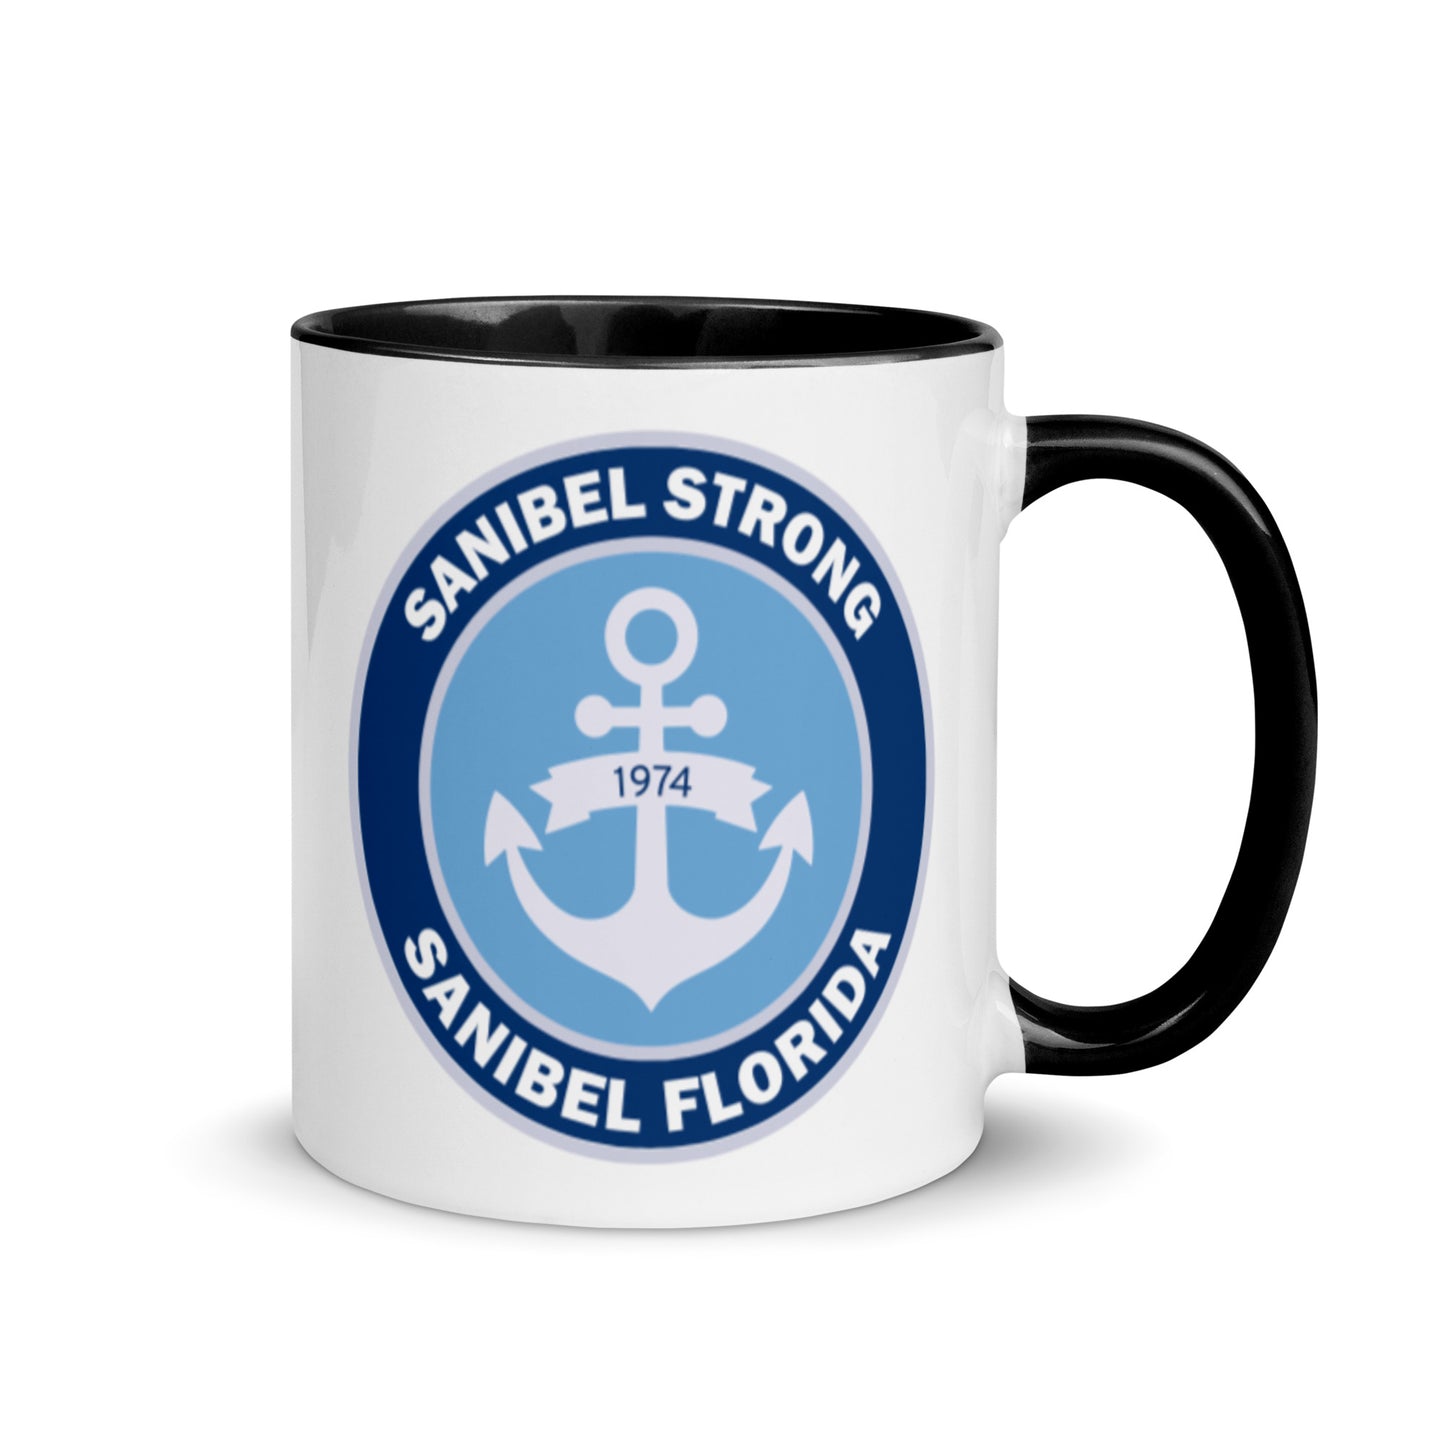 Sanibel Strong Anchor Mug